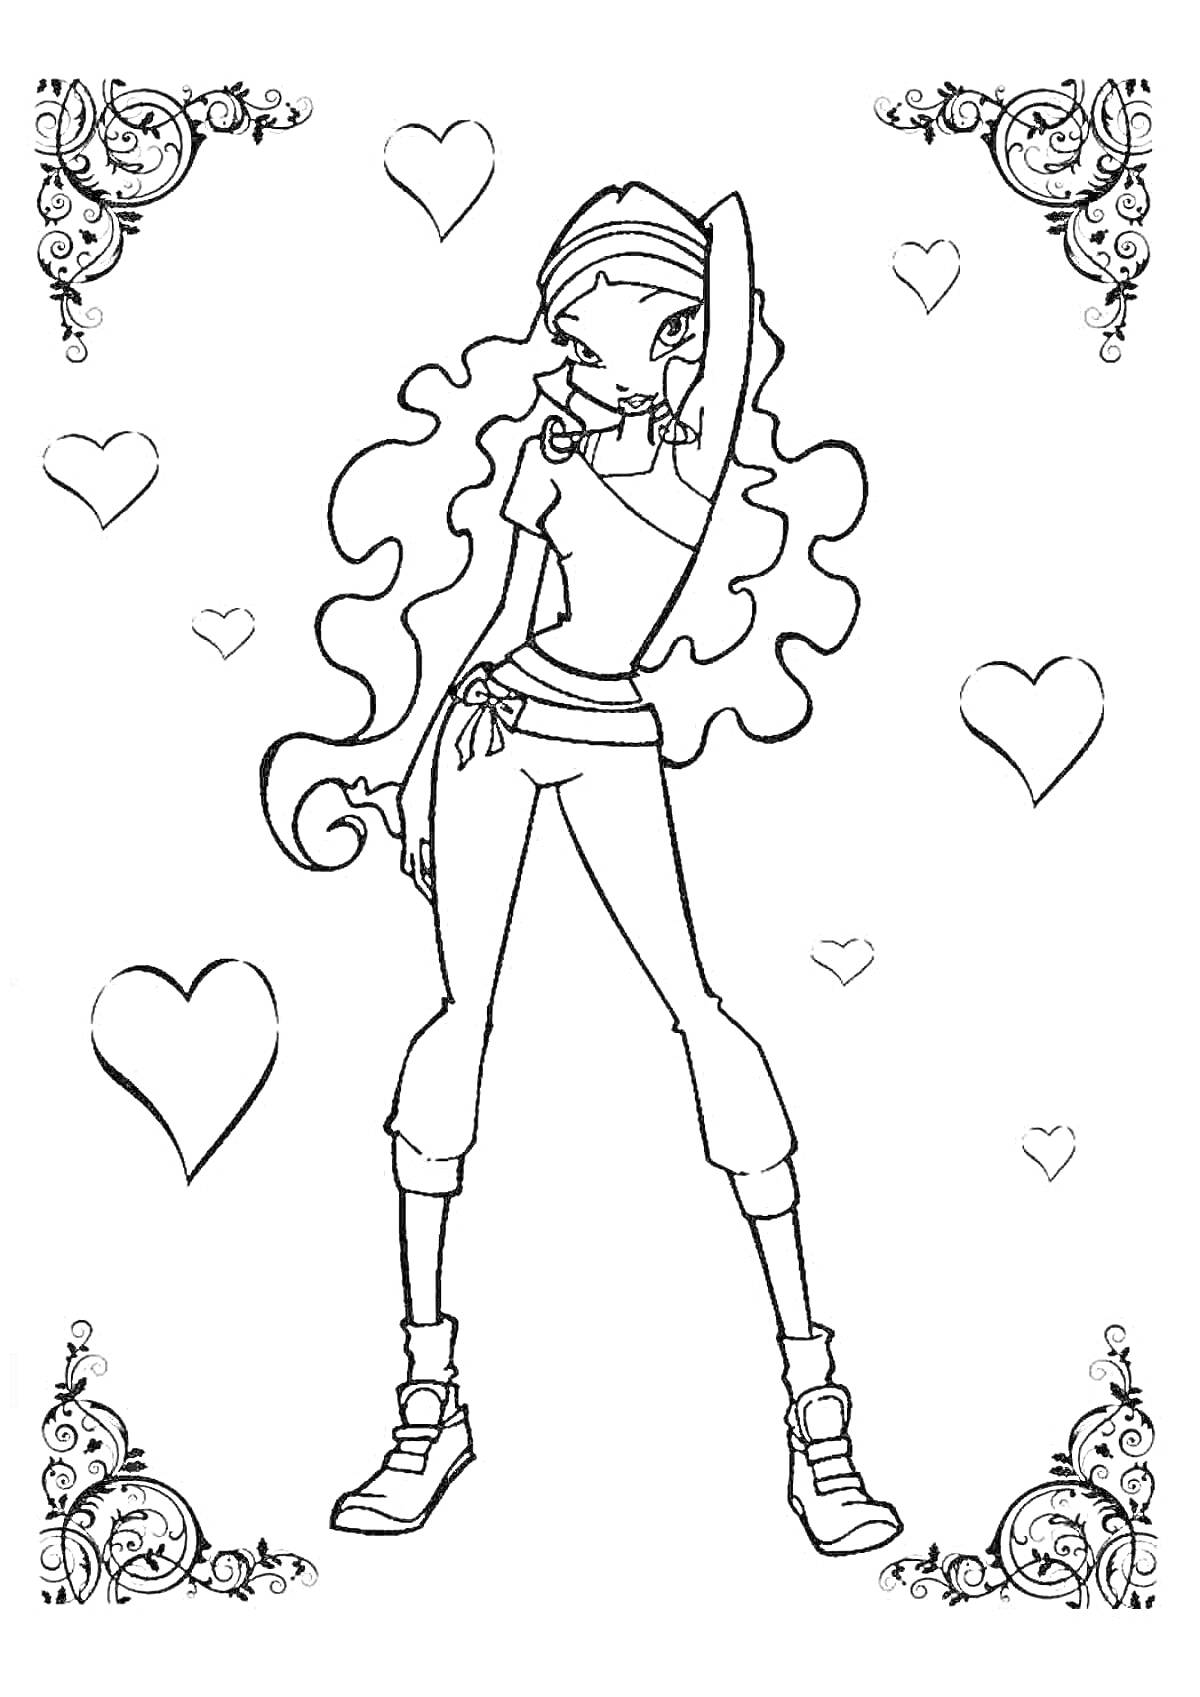 Раскраска Лейла с кудрявыми волосами и в спортивной одежде, окружена сердечками и декоративными узорами по углам